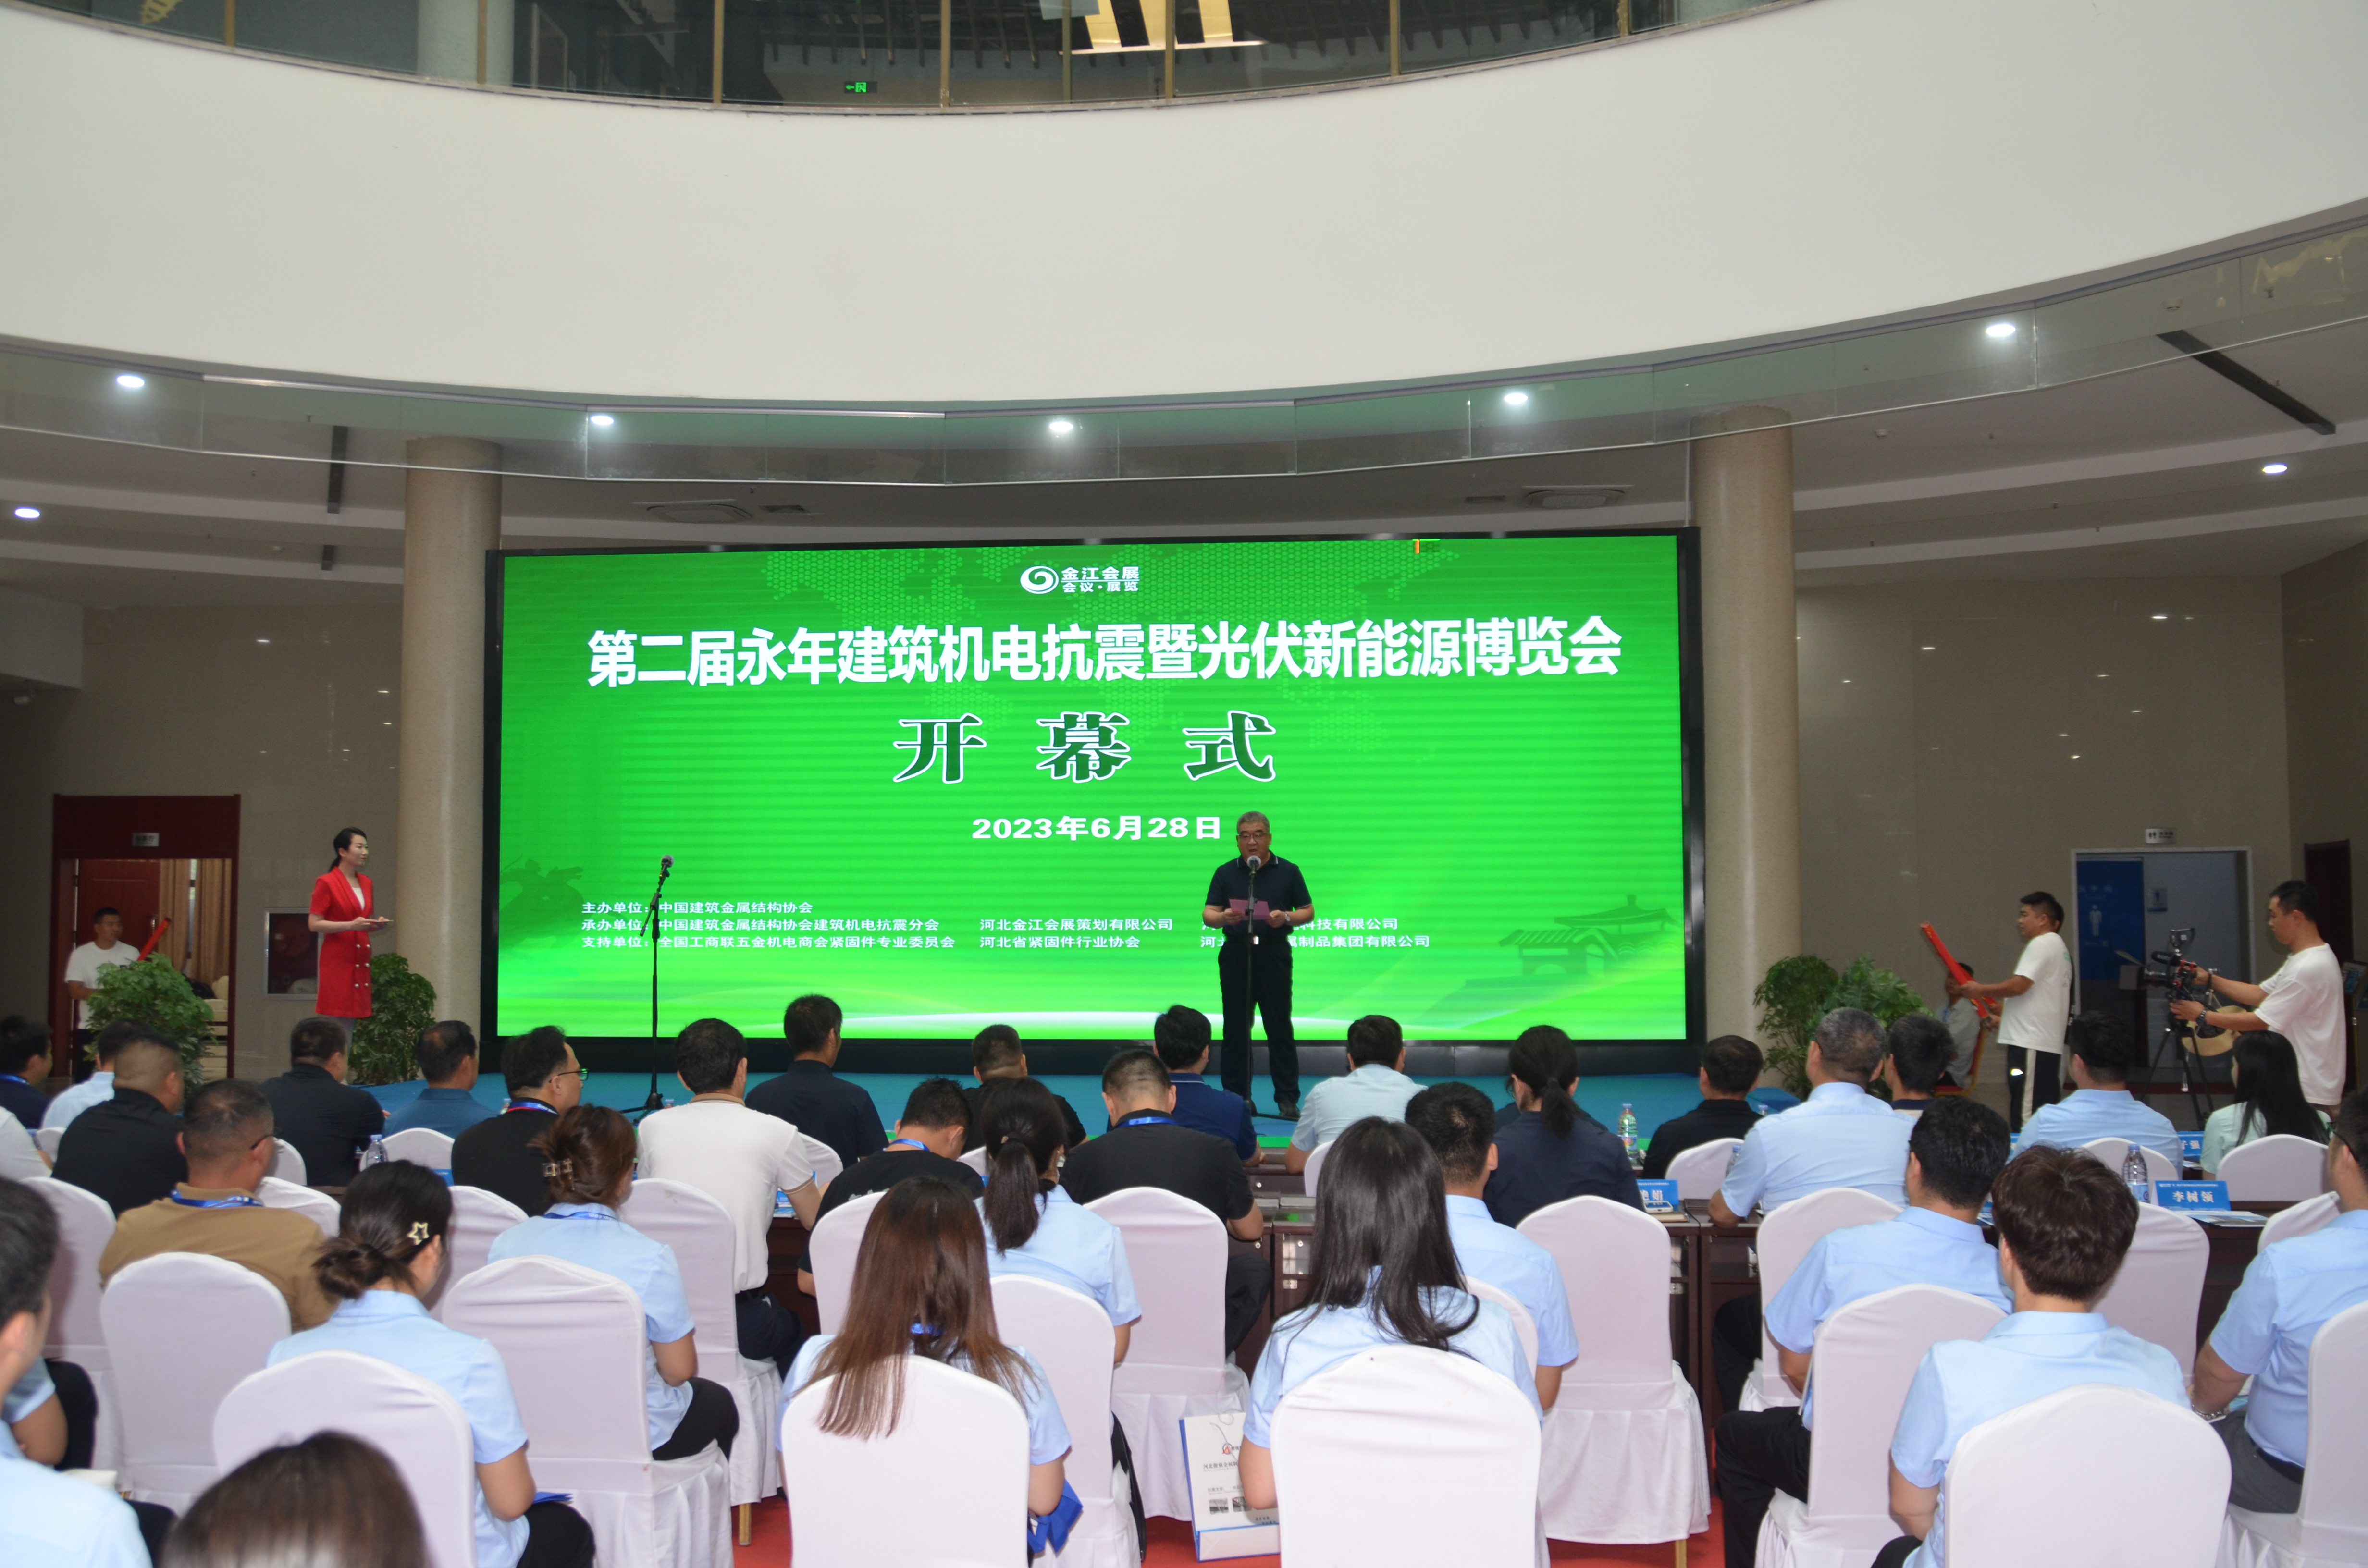 第3届华北光伏新能源暨建筑机电抗震博览会将于6月28-30日在永年举行